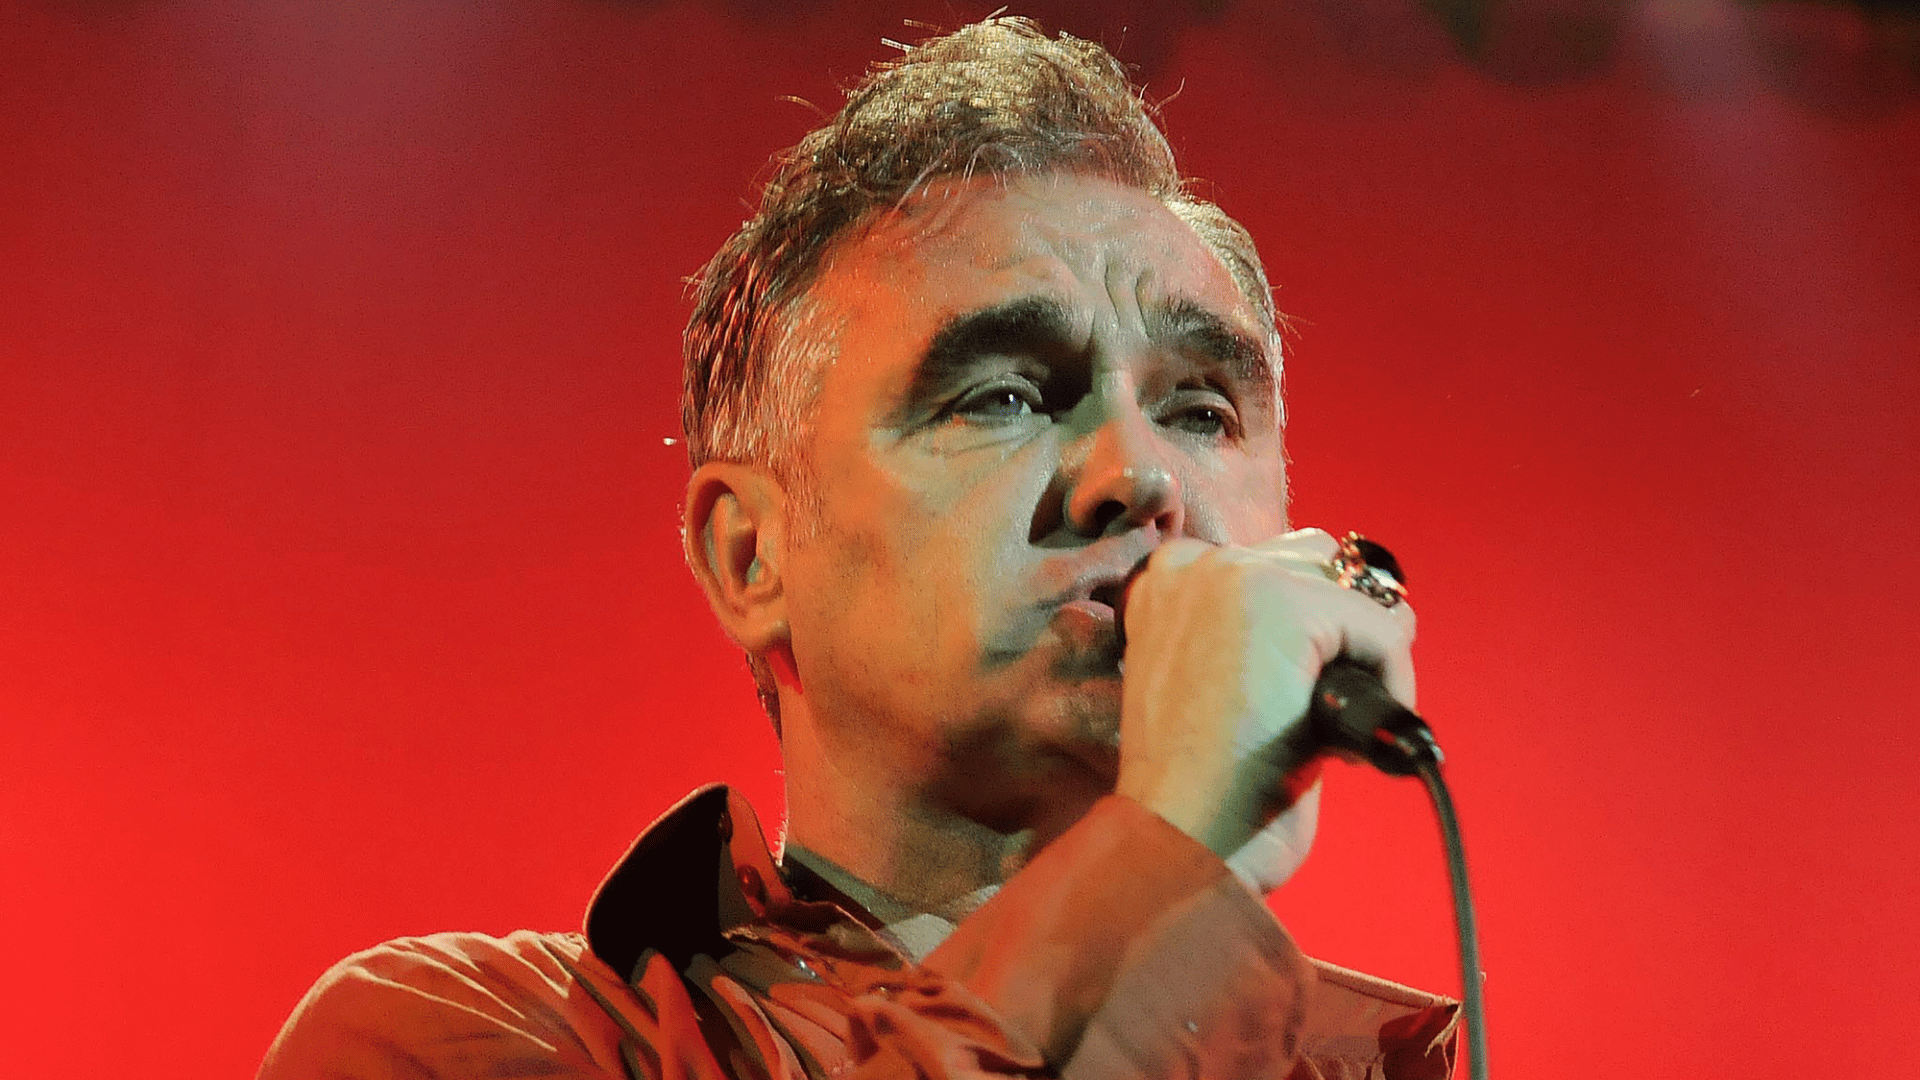 Imagem de Morrissey, vocalista da banda The Smiths.